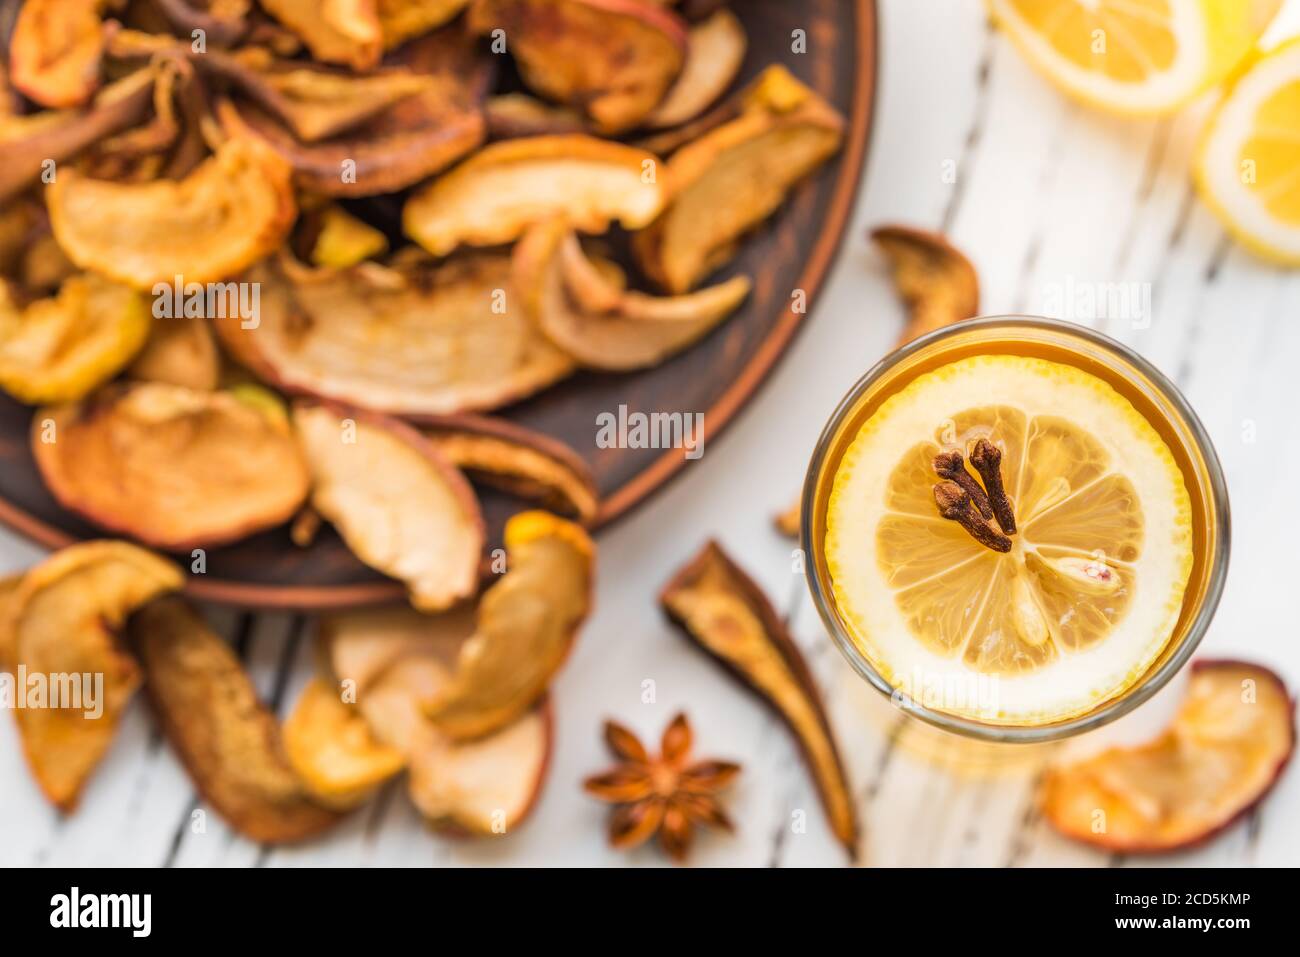 Bevanda di frutta secca con limone su fondo di legno. Uzvar potrebbe essere bevuto freddo o caldo. Foto Stock